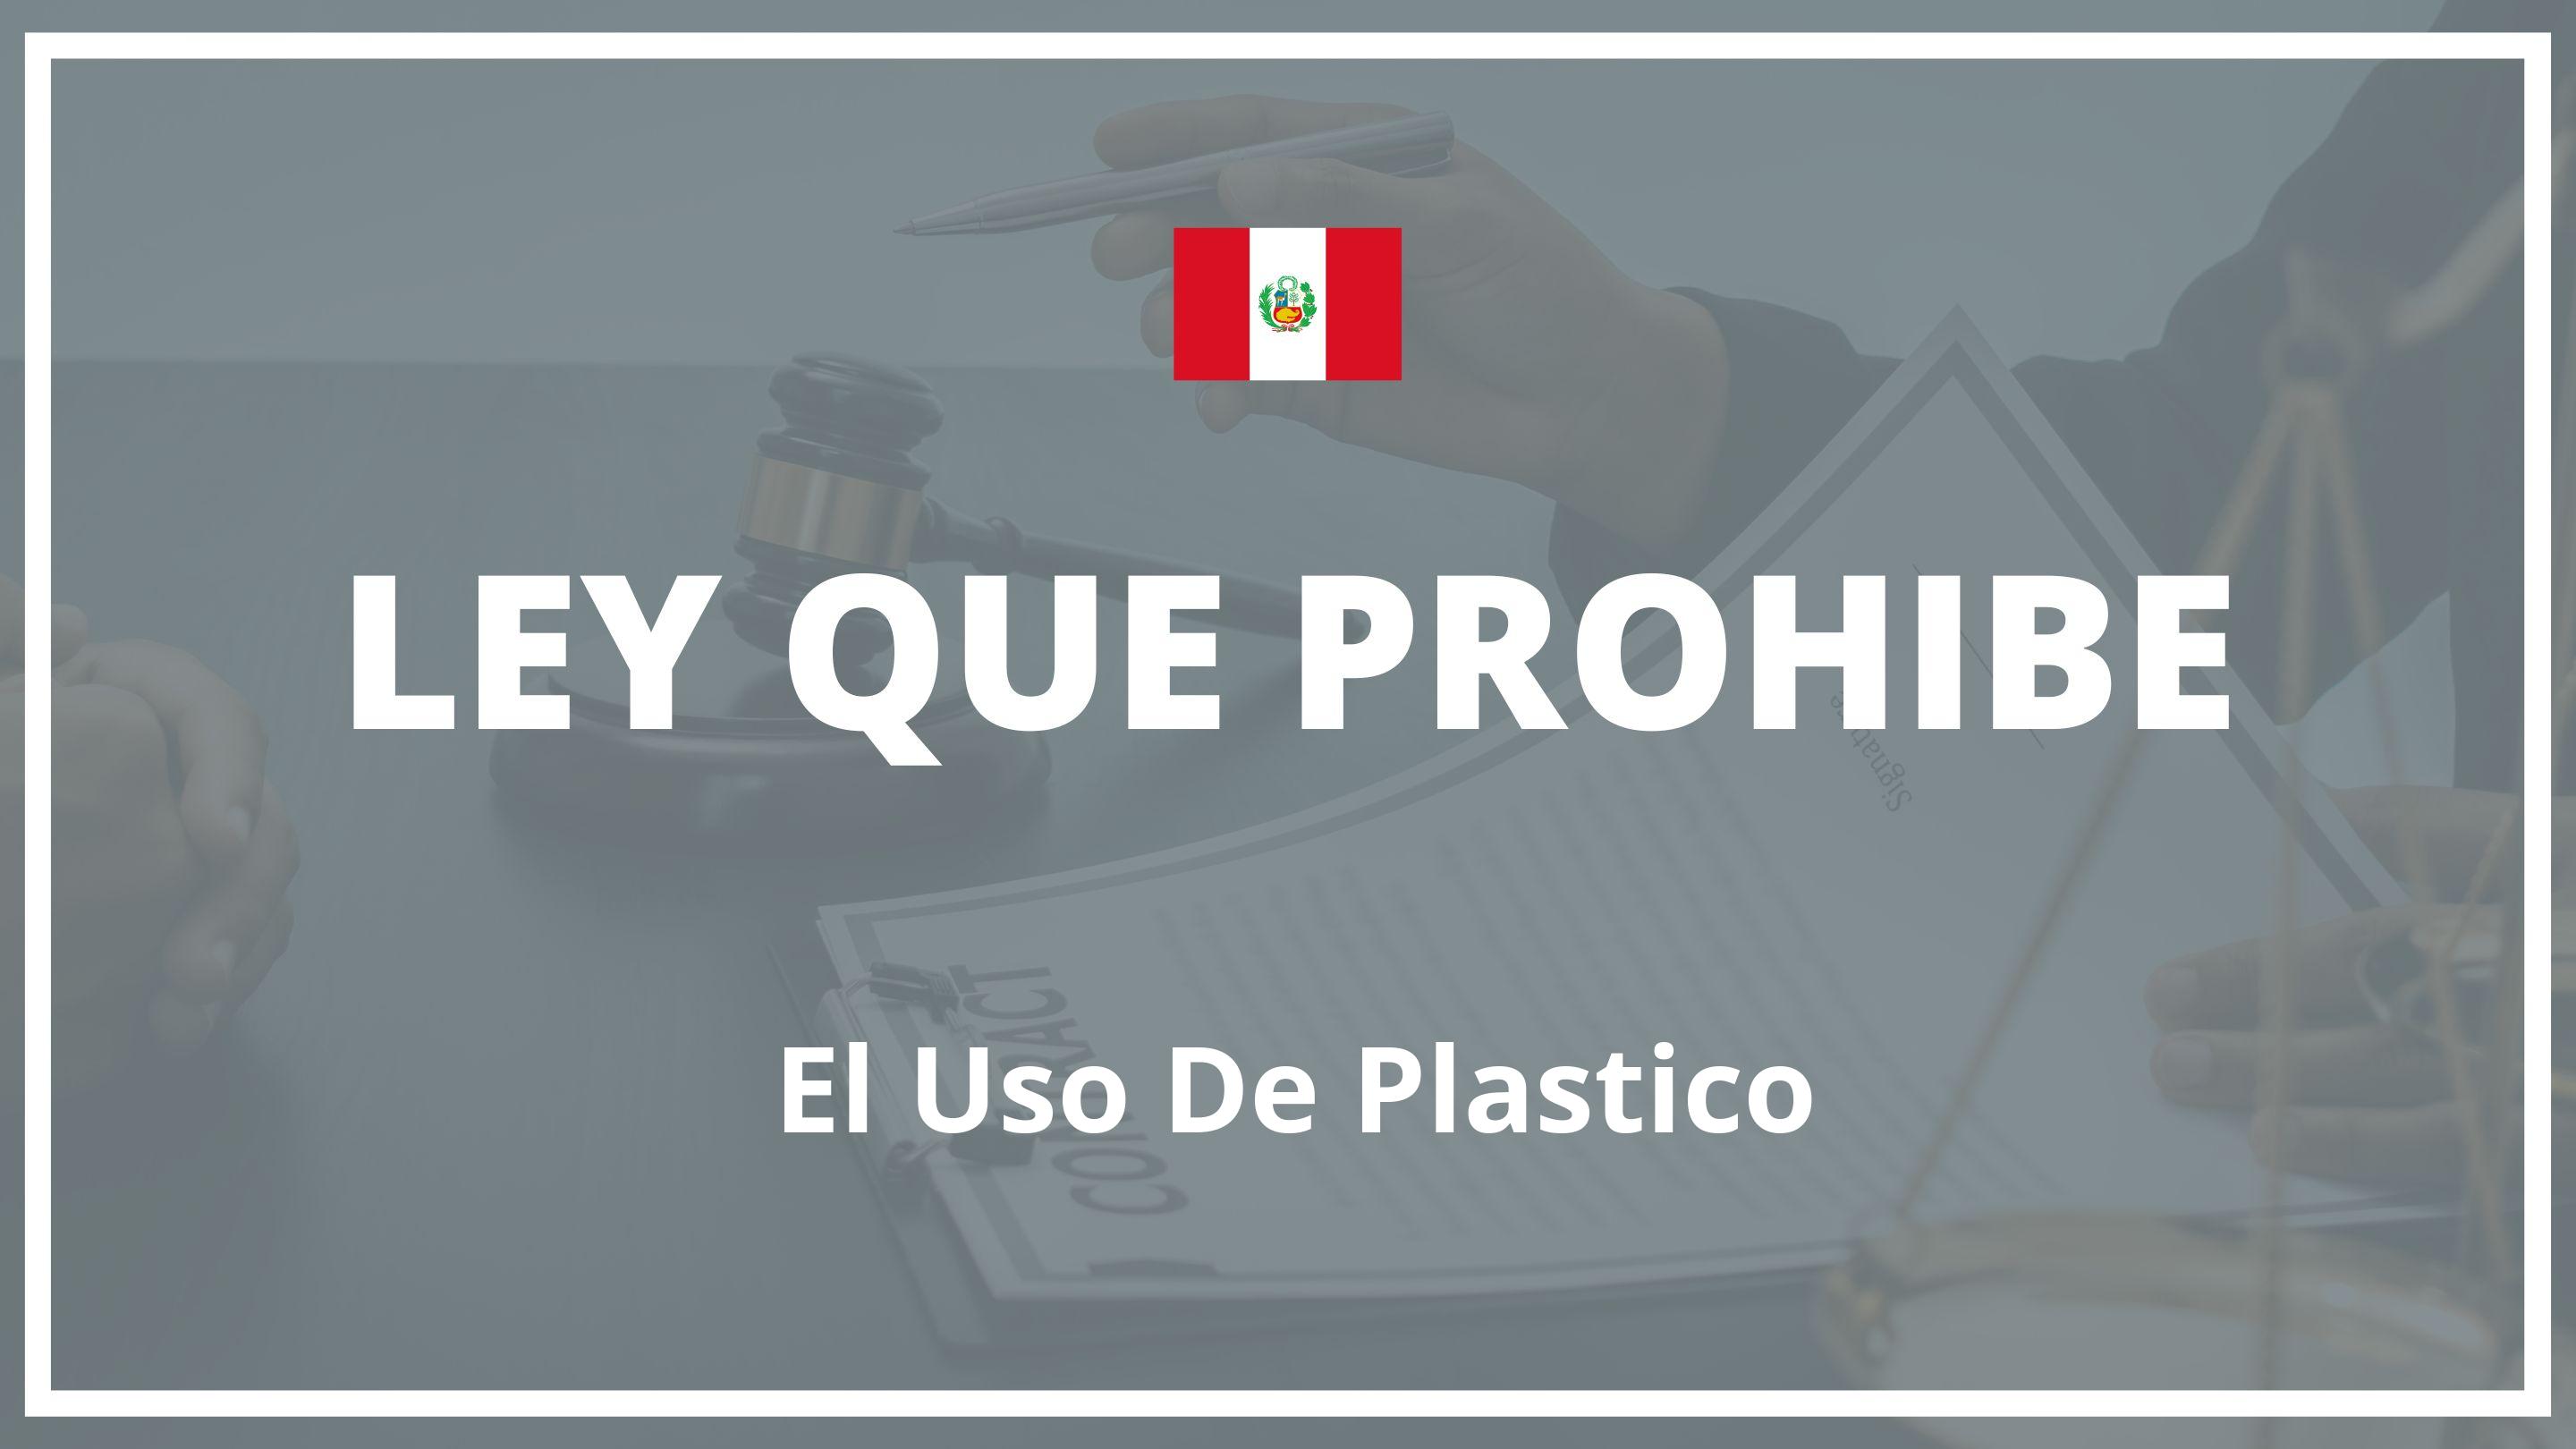 Ley que prohibe el uso de plastico Peru